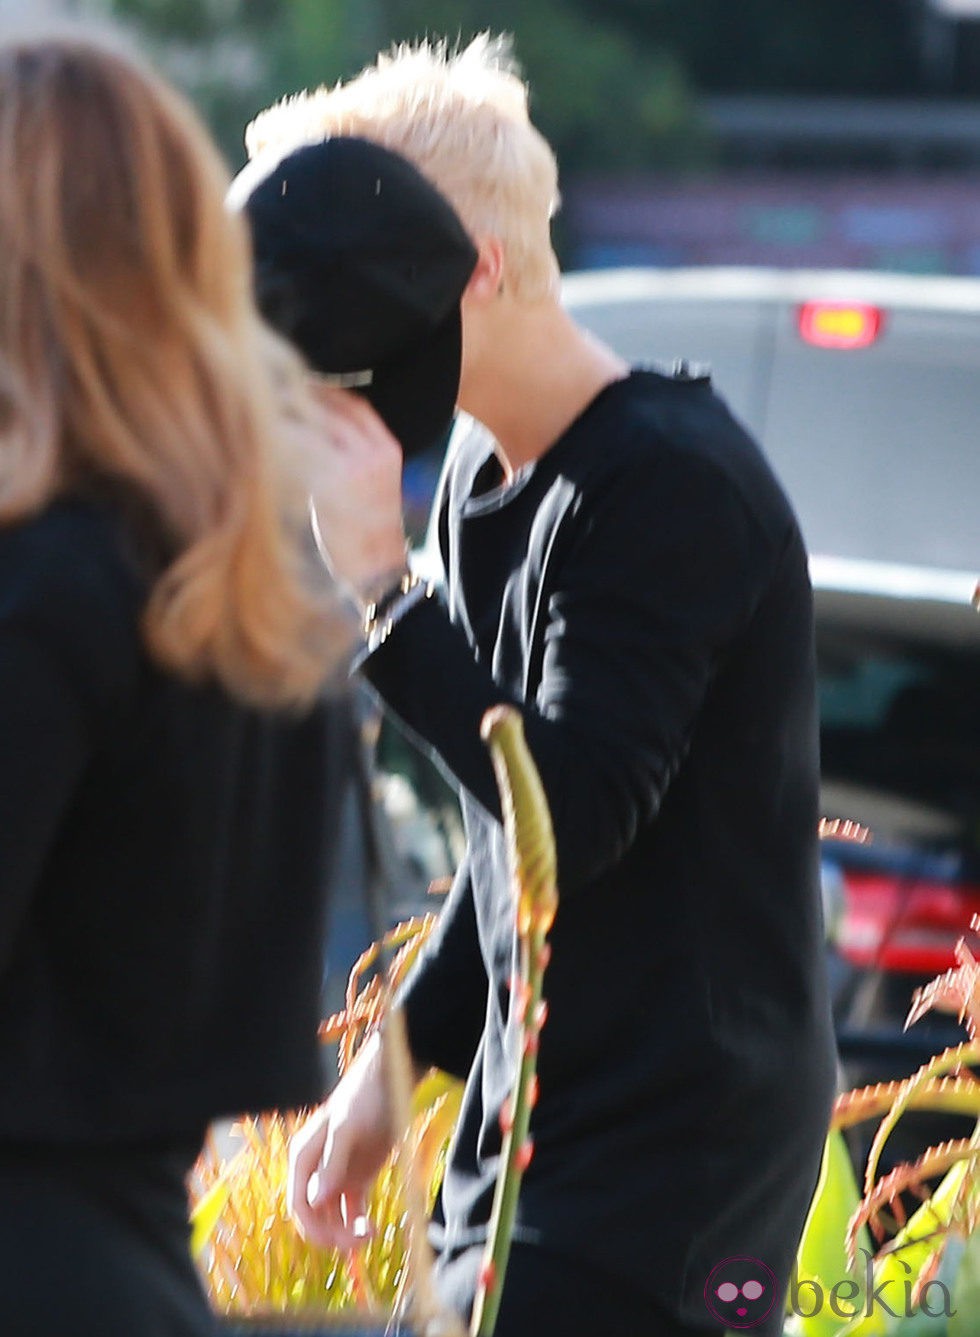 Justin Bieber cambia de imagen tiñéndose el pelo de rubio platino